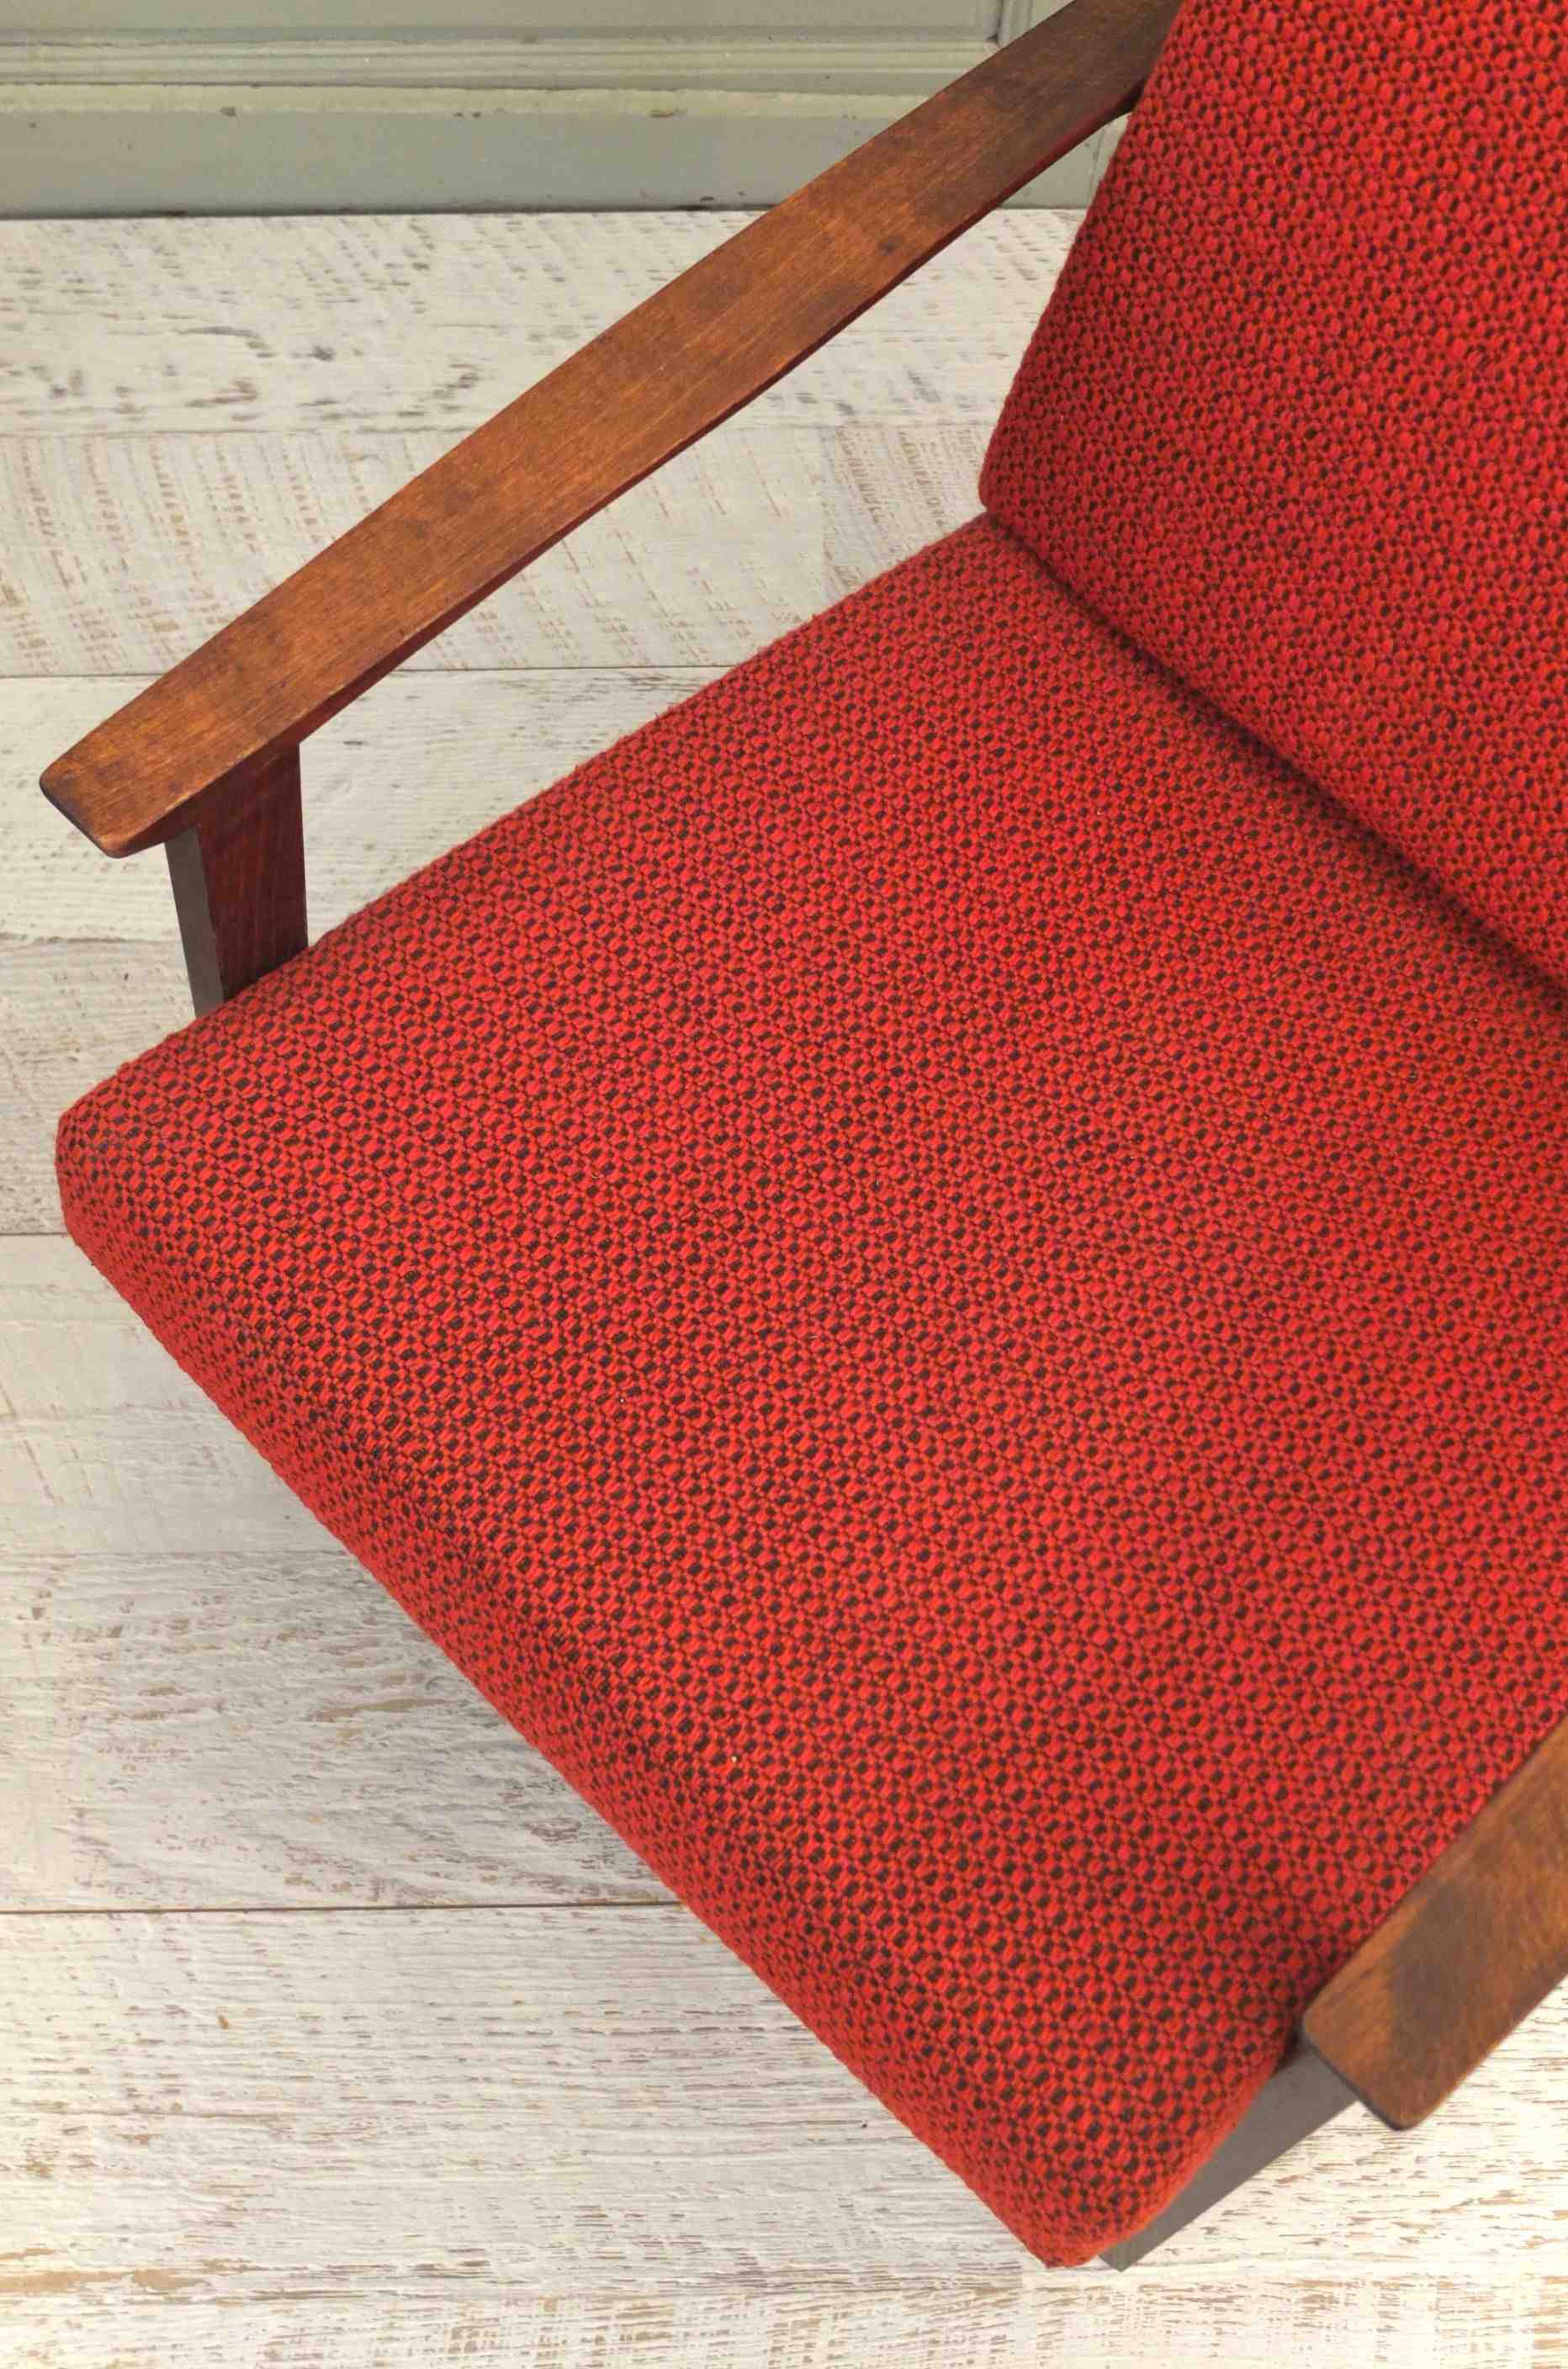 fauteuil midcentury aux lignes modernistes Slavia Vintage "Madison Avenue" 8